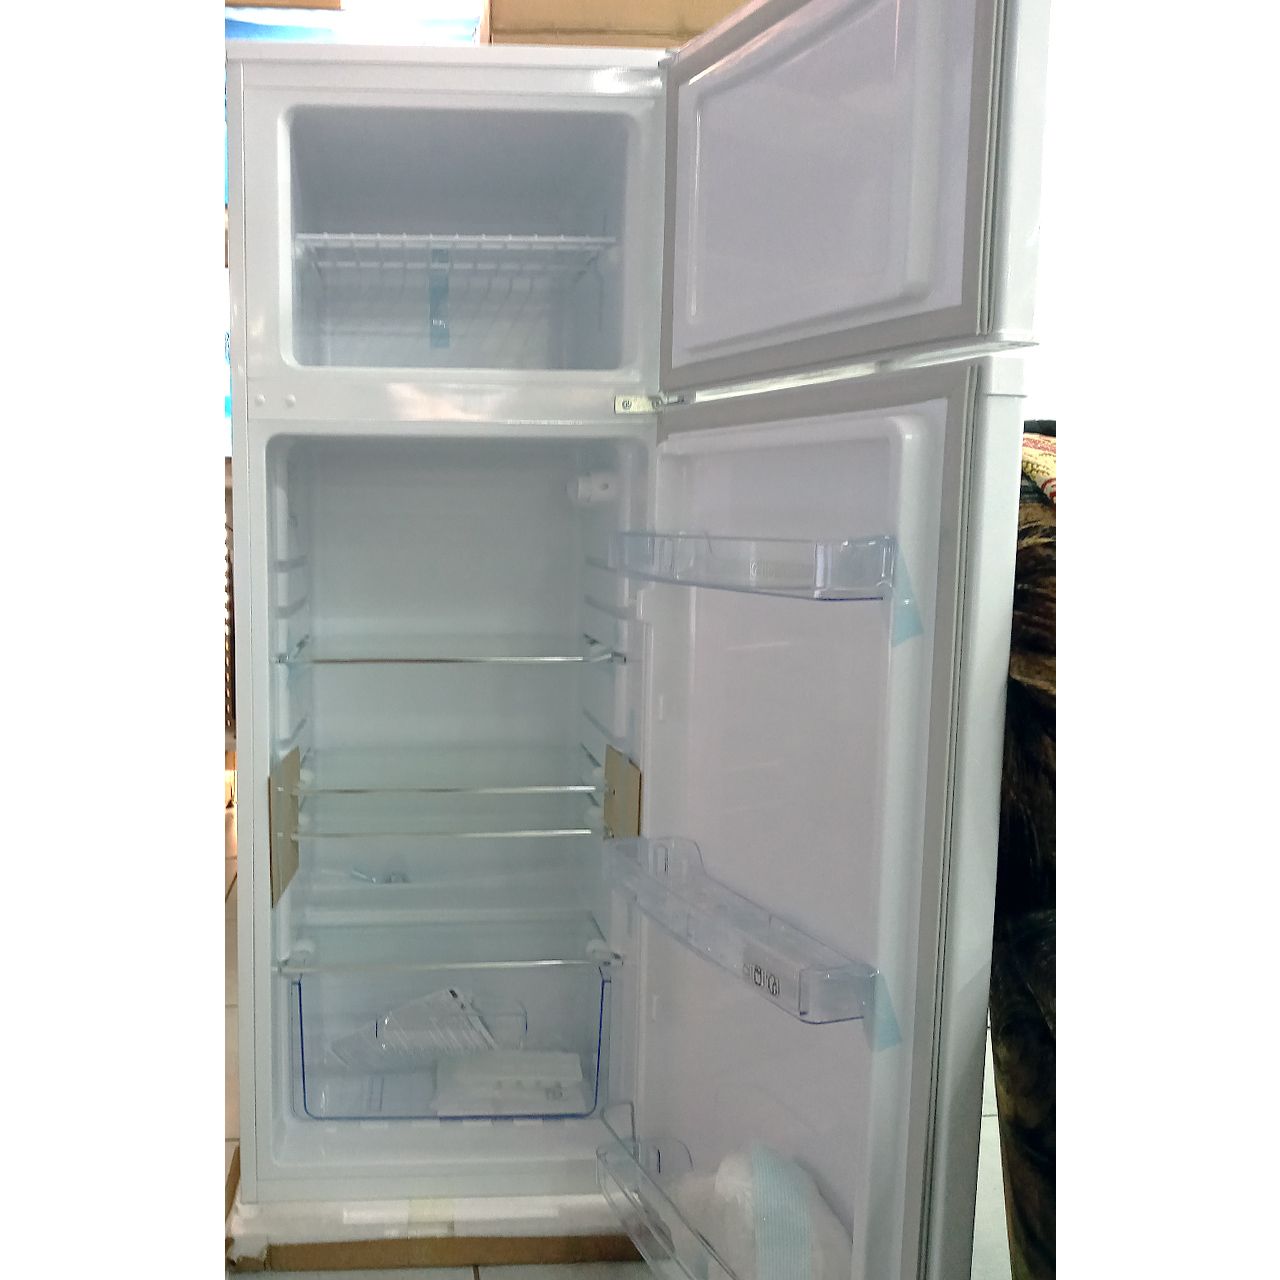 Холодильник двухкамерный Artel 212 литров